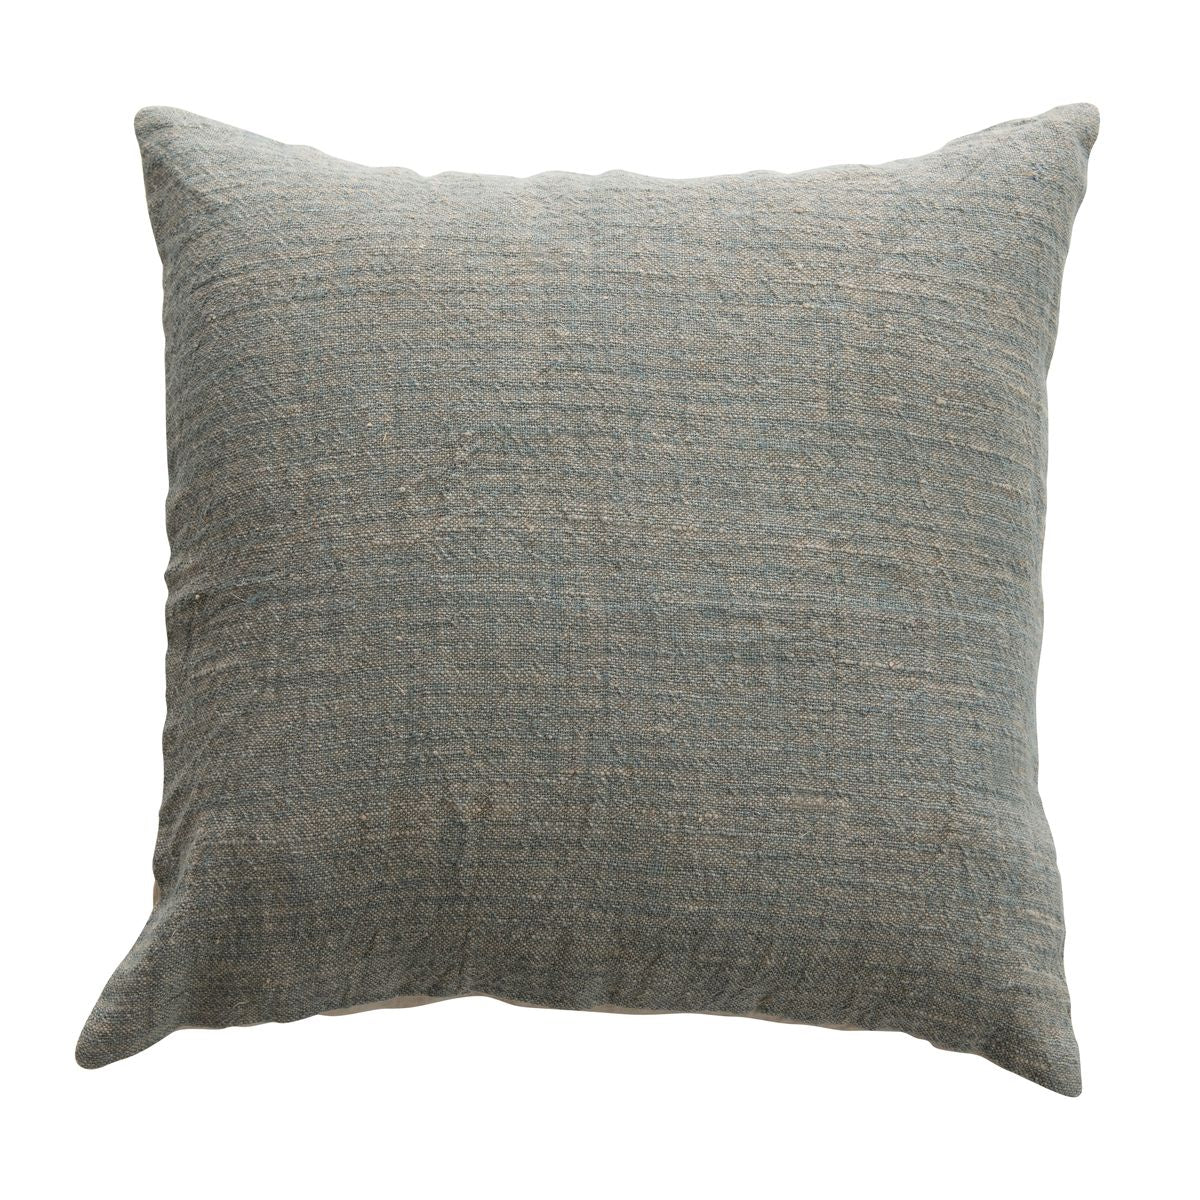 Square Cotton/Linen Pillow - Moss Green, 19" x 19"